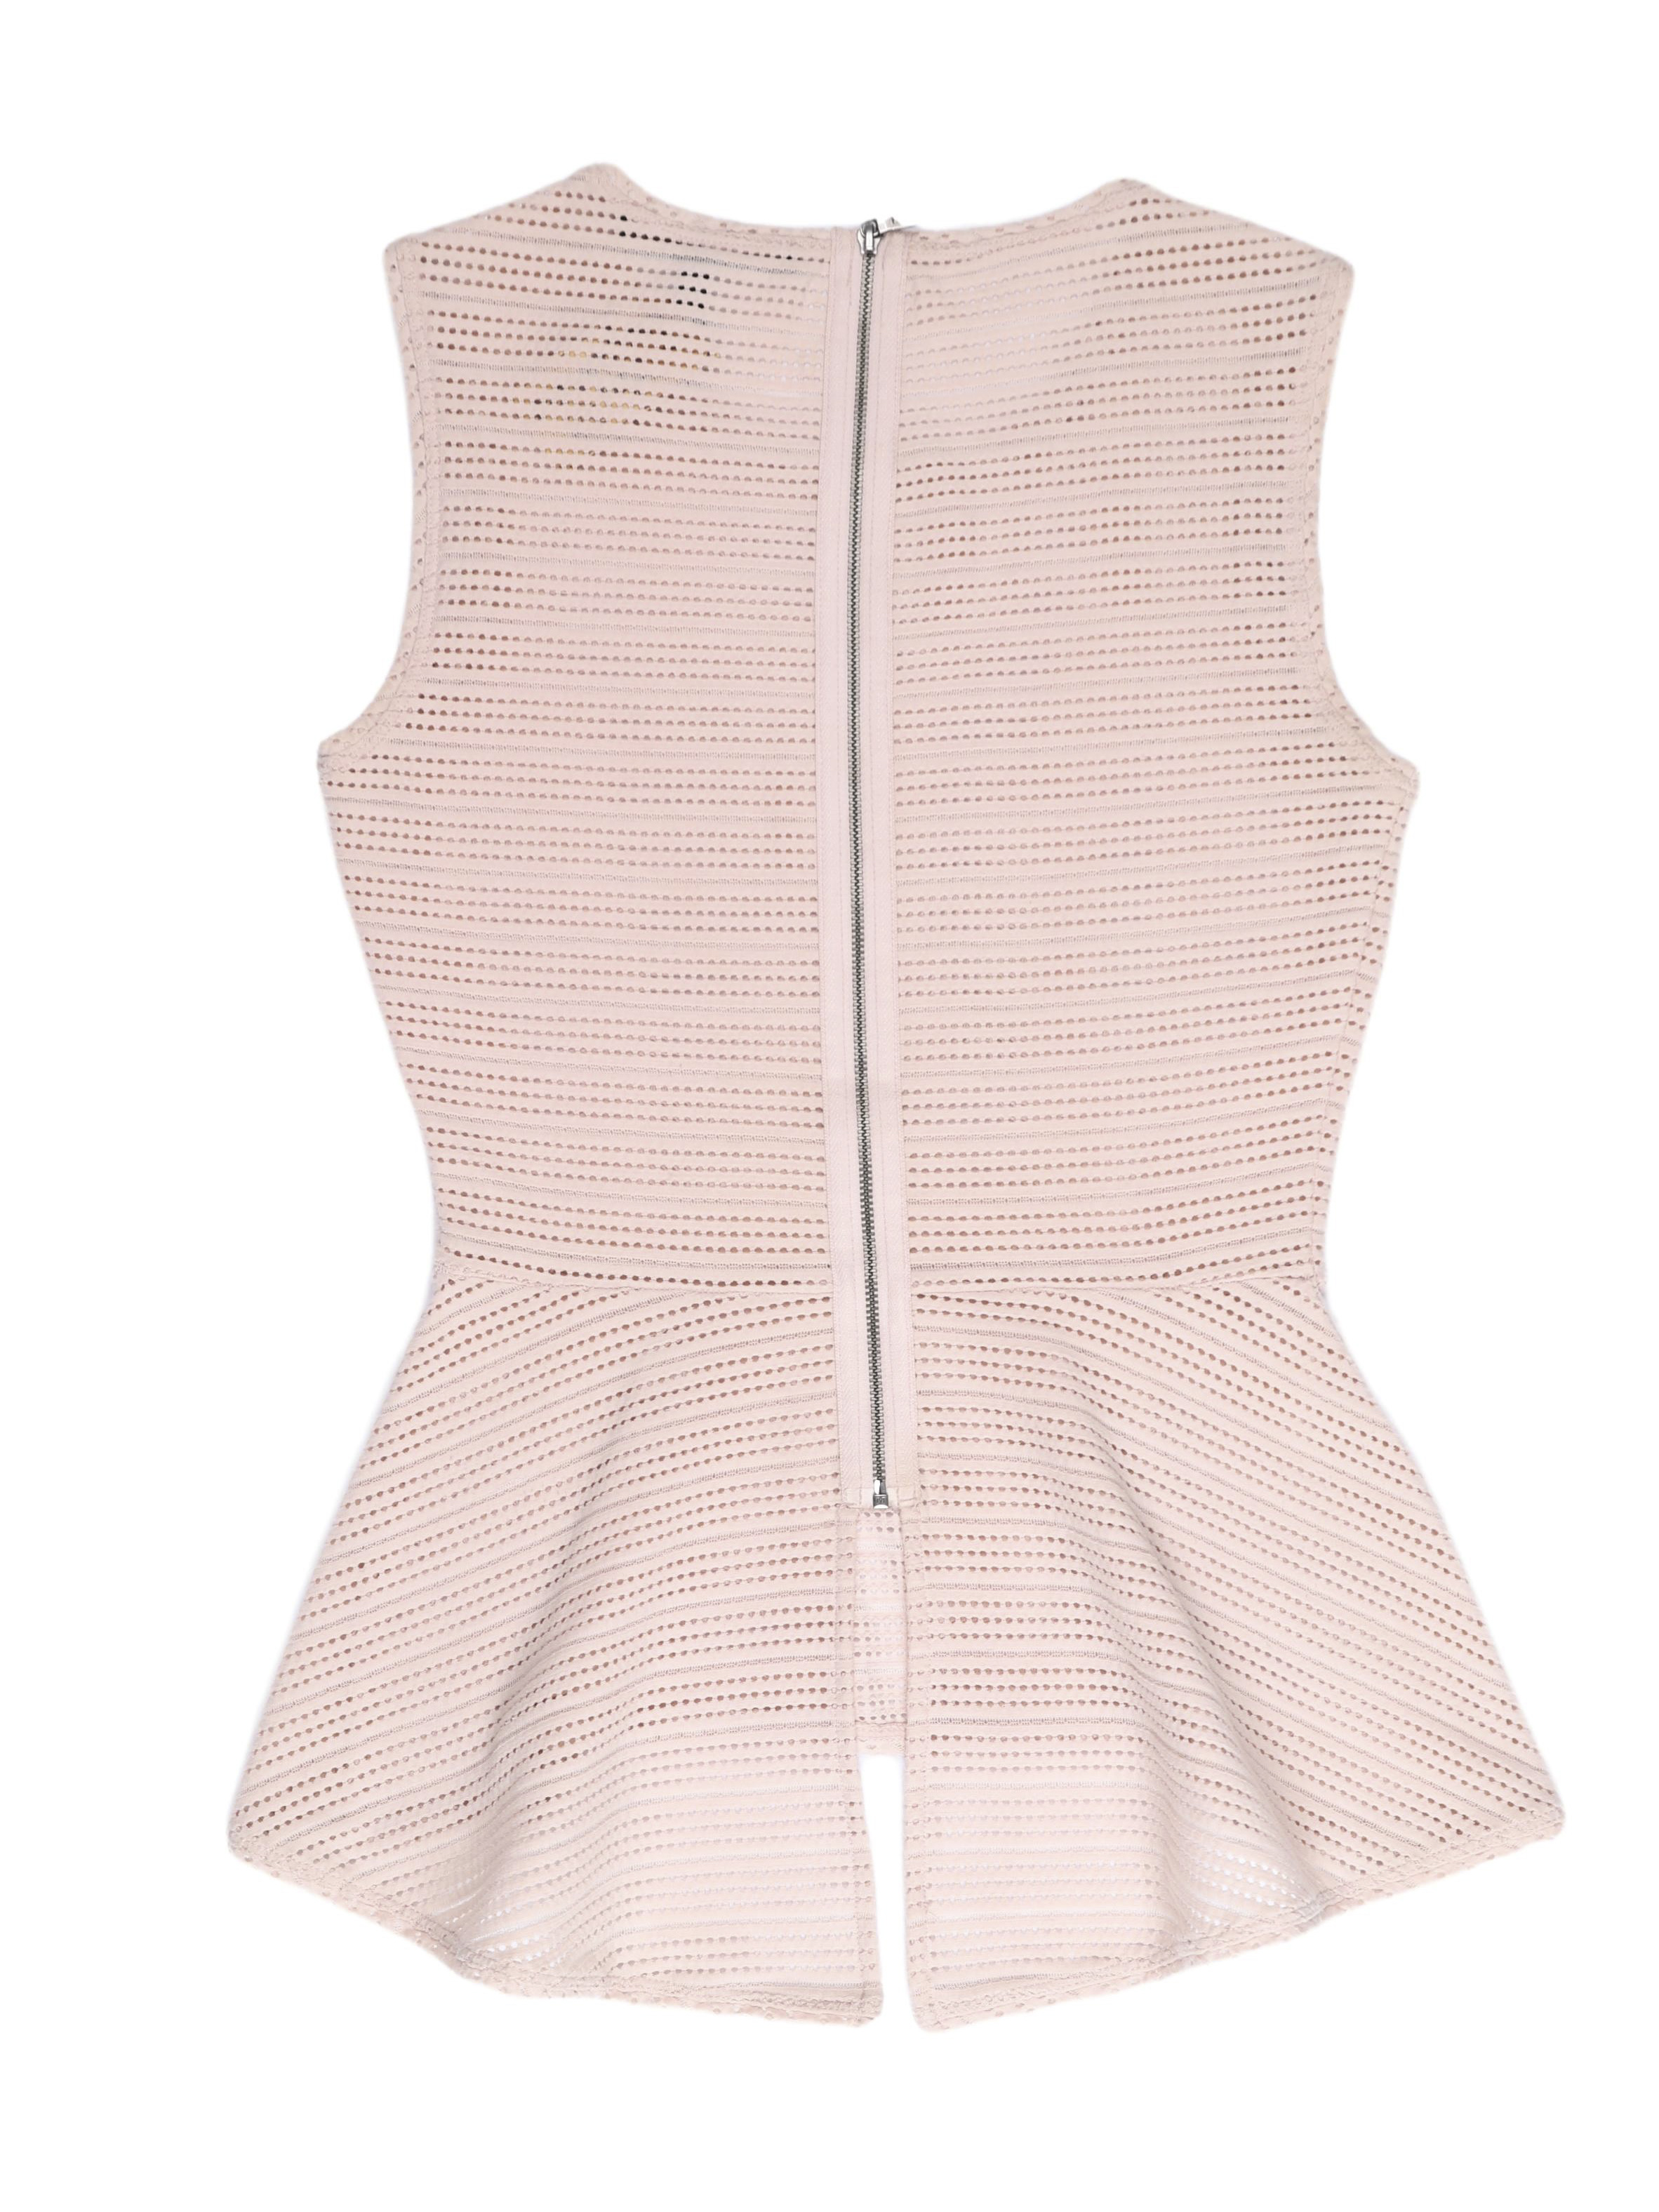 Blusa peplum BCBGMaxazria tela palo rosa calada con cierre en la espalda. Un clásico de la marca ¡Hermosa y sentadora! Precio original S/ 350